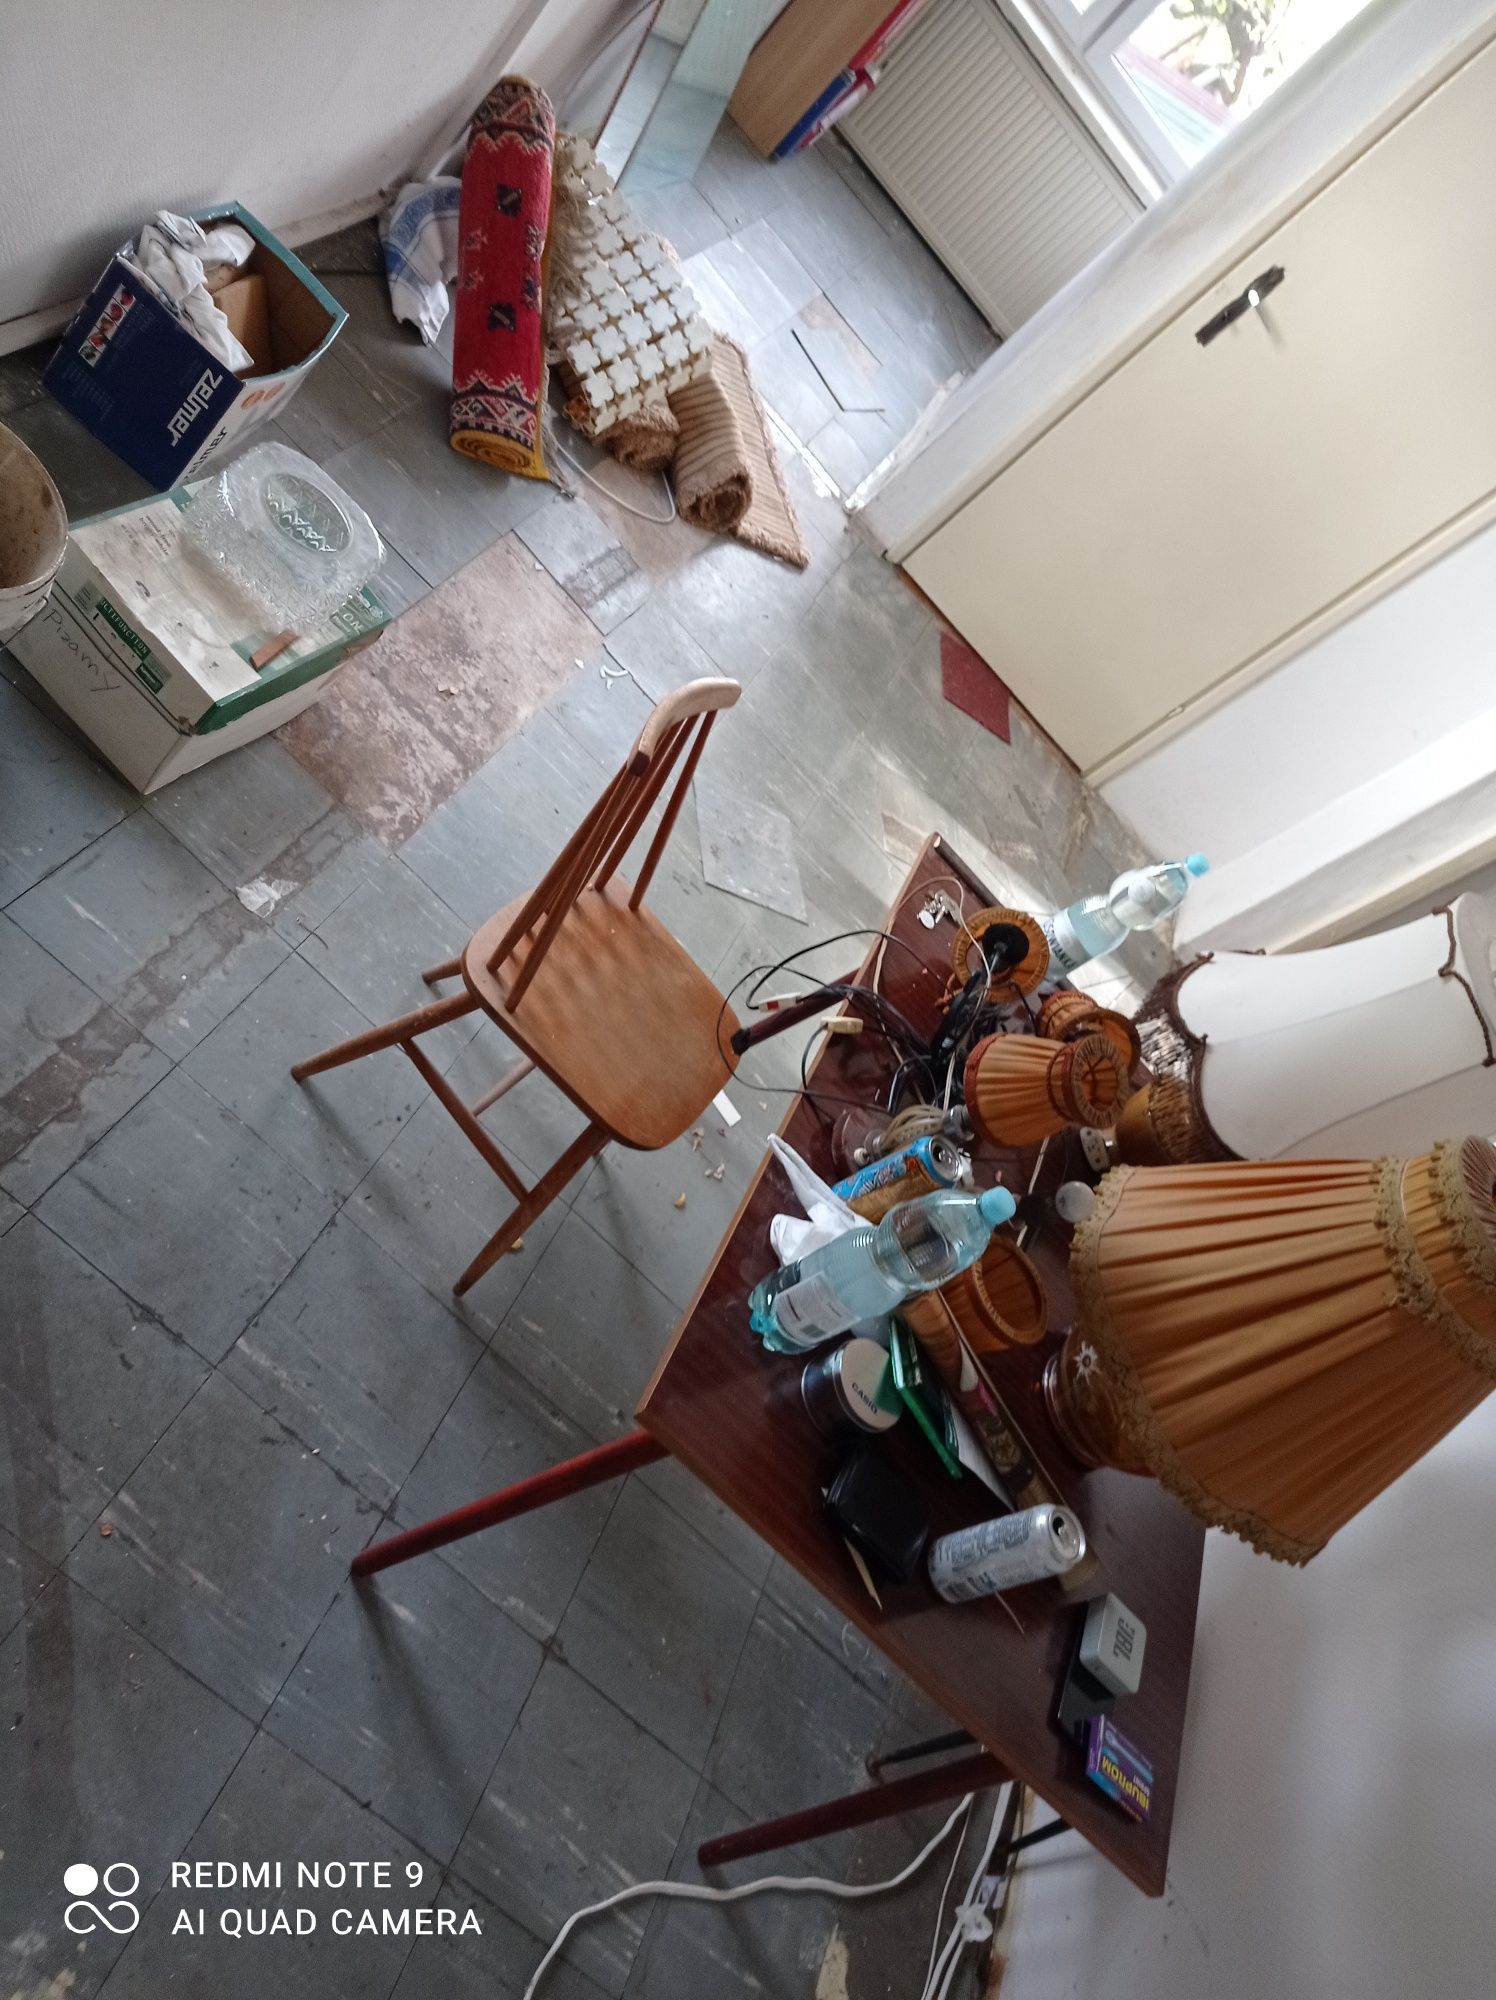 Opróżnianie sprzątanie domów mieszkań piwnic strychów garaży działek